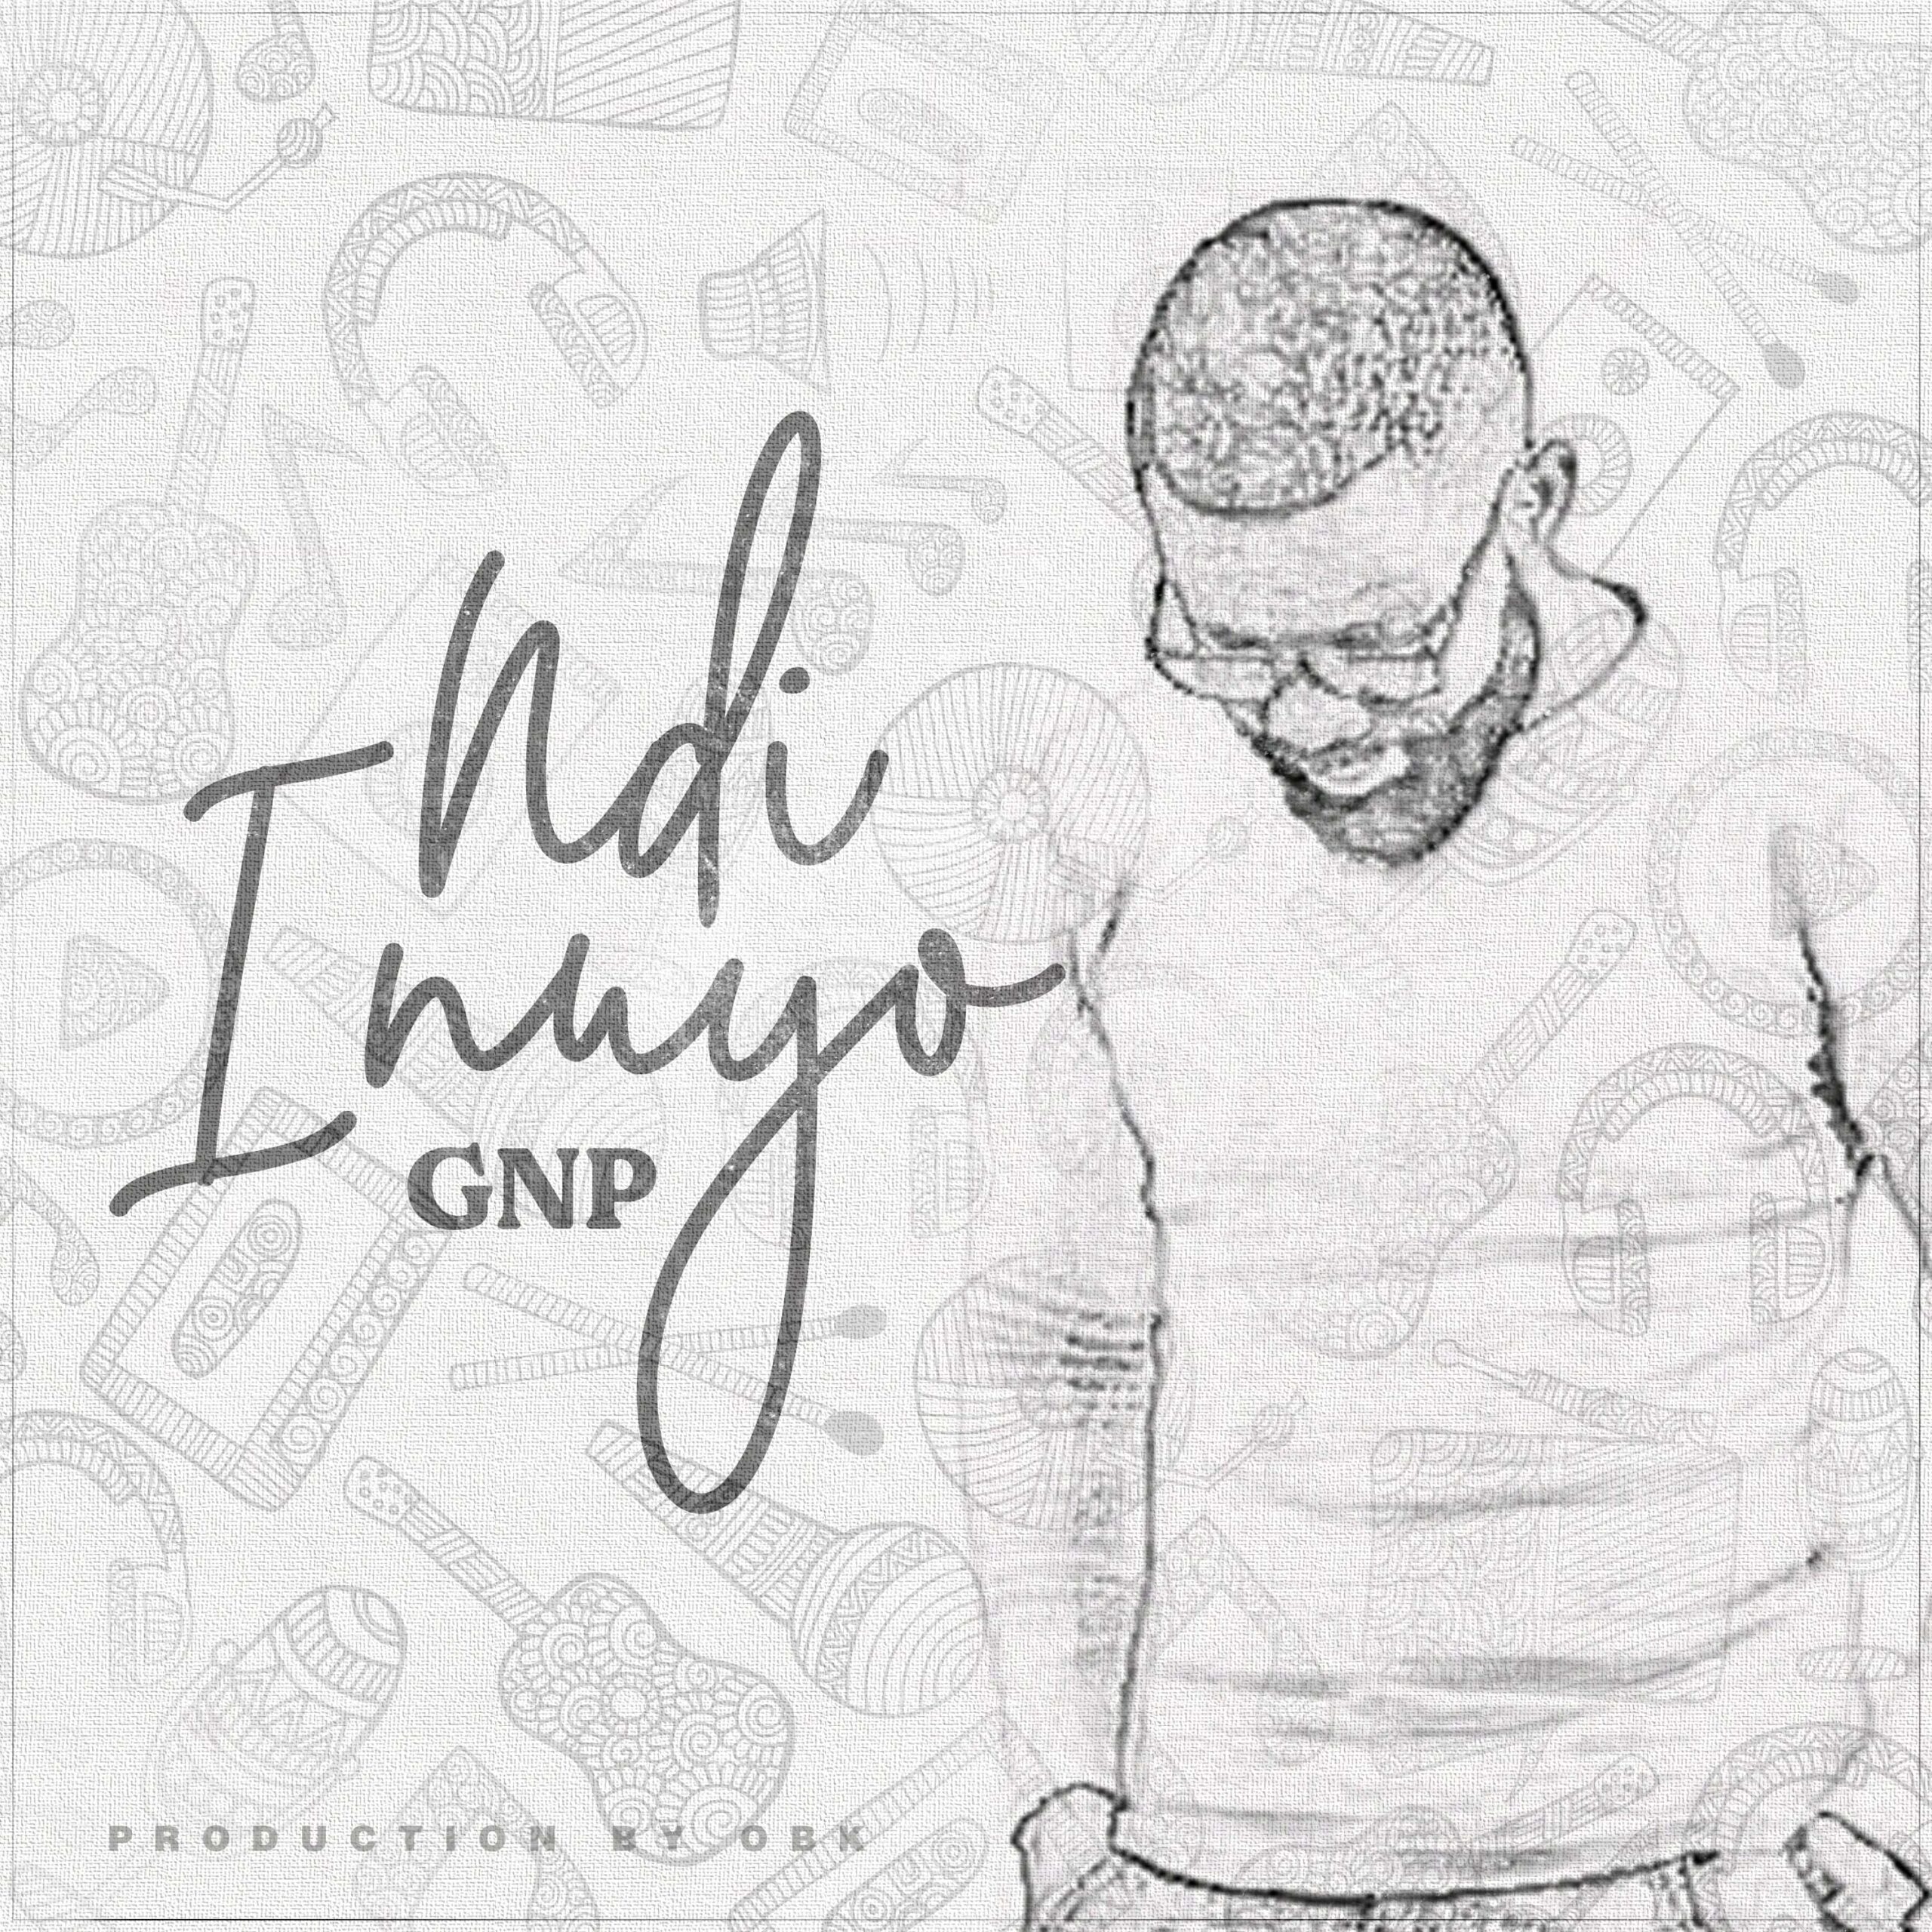  [Music Download] GNP – Ndi Inuyo